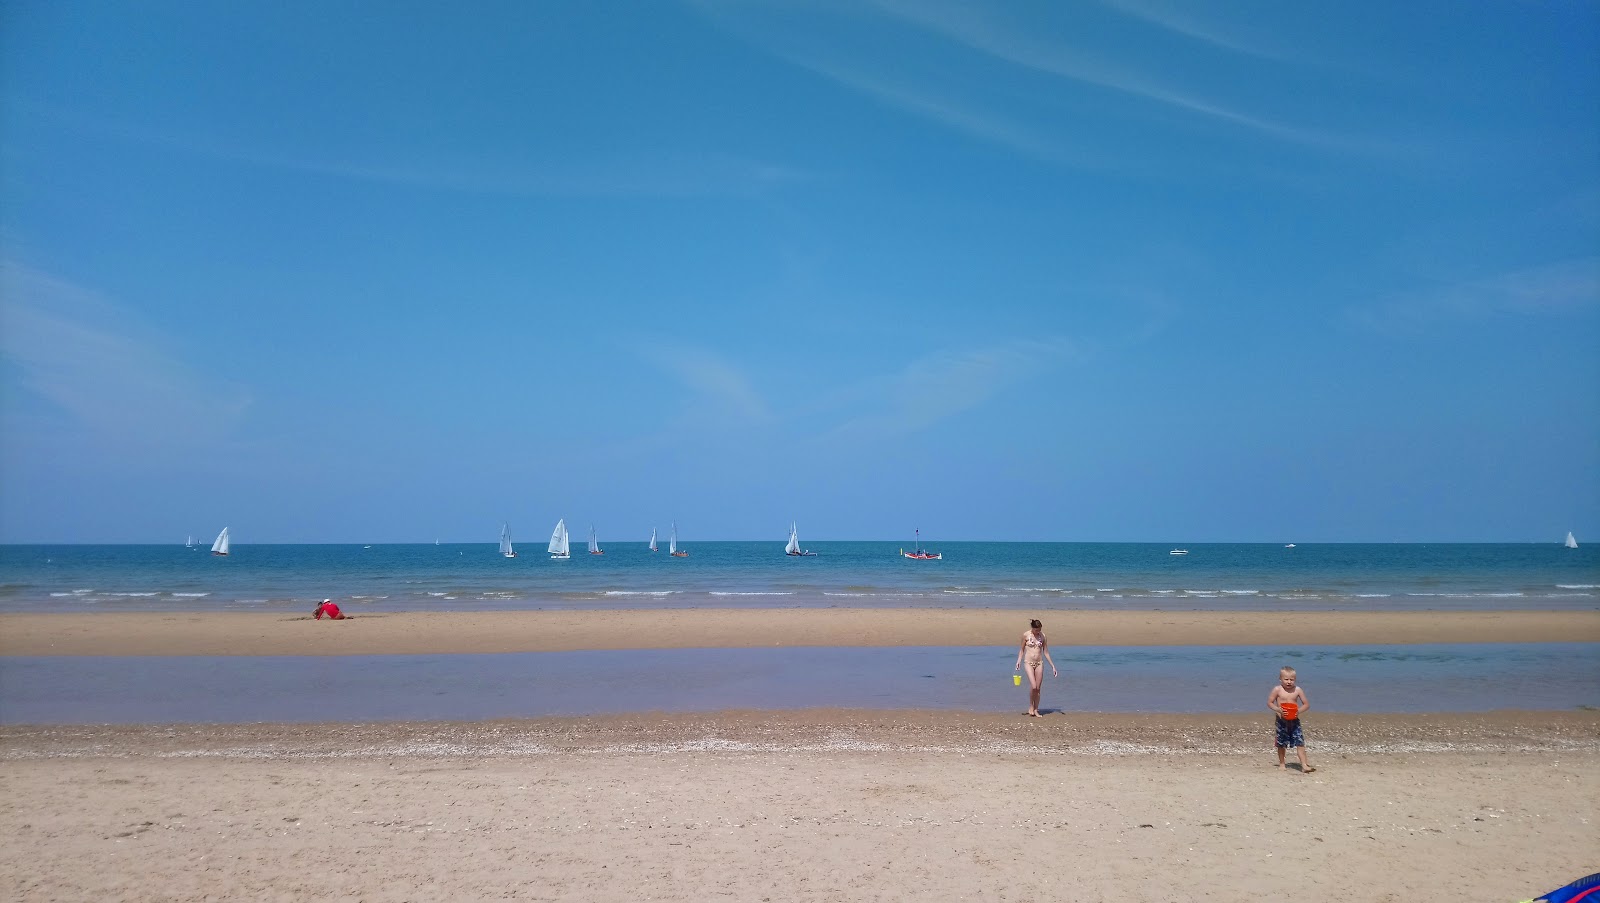 布兰卡斯特海滩的照片 带有蓝色纯水表面